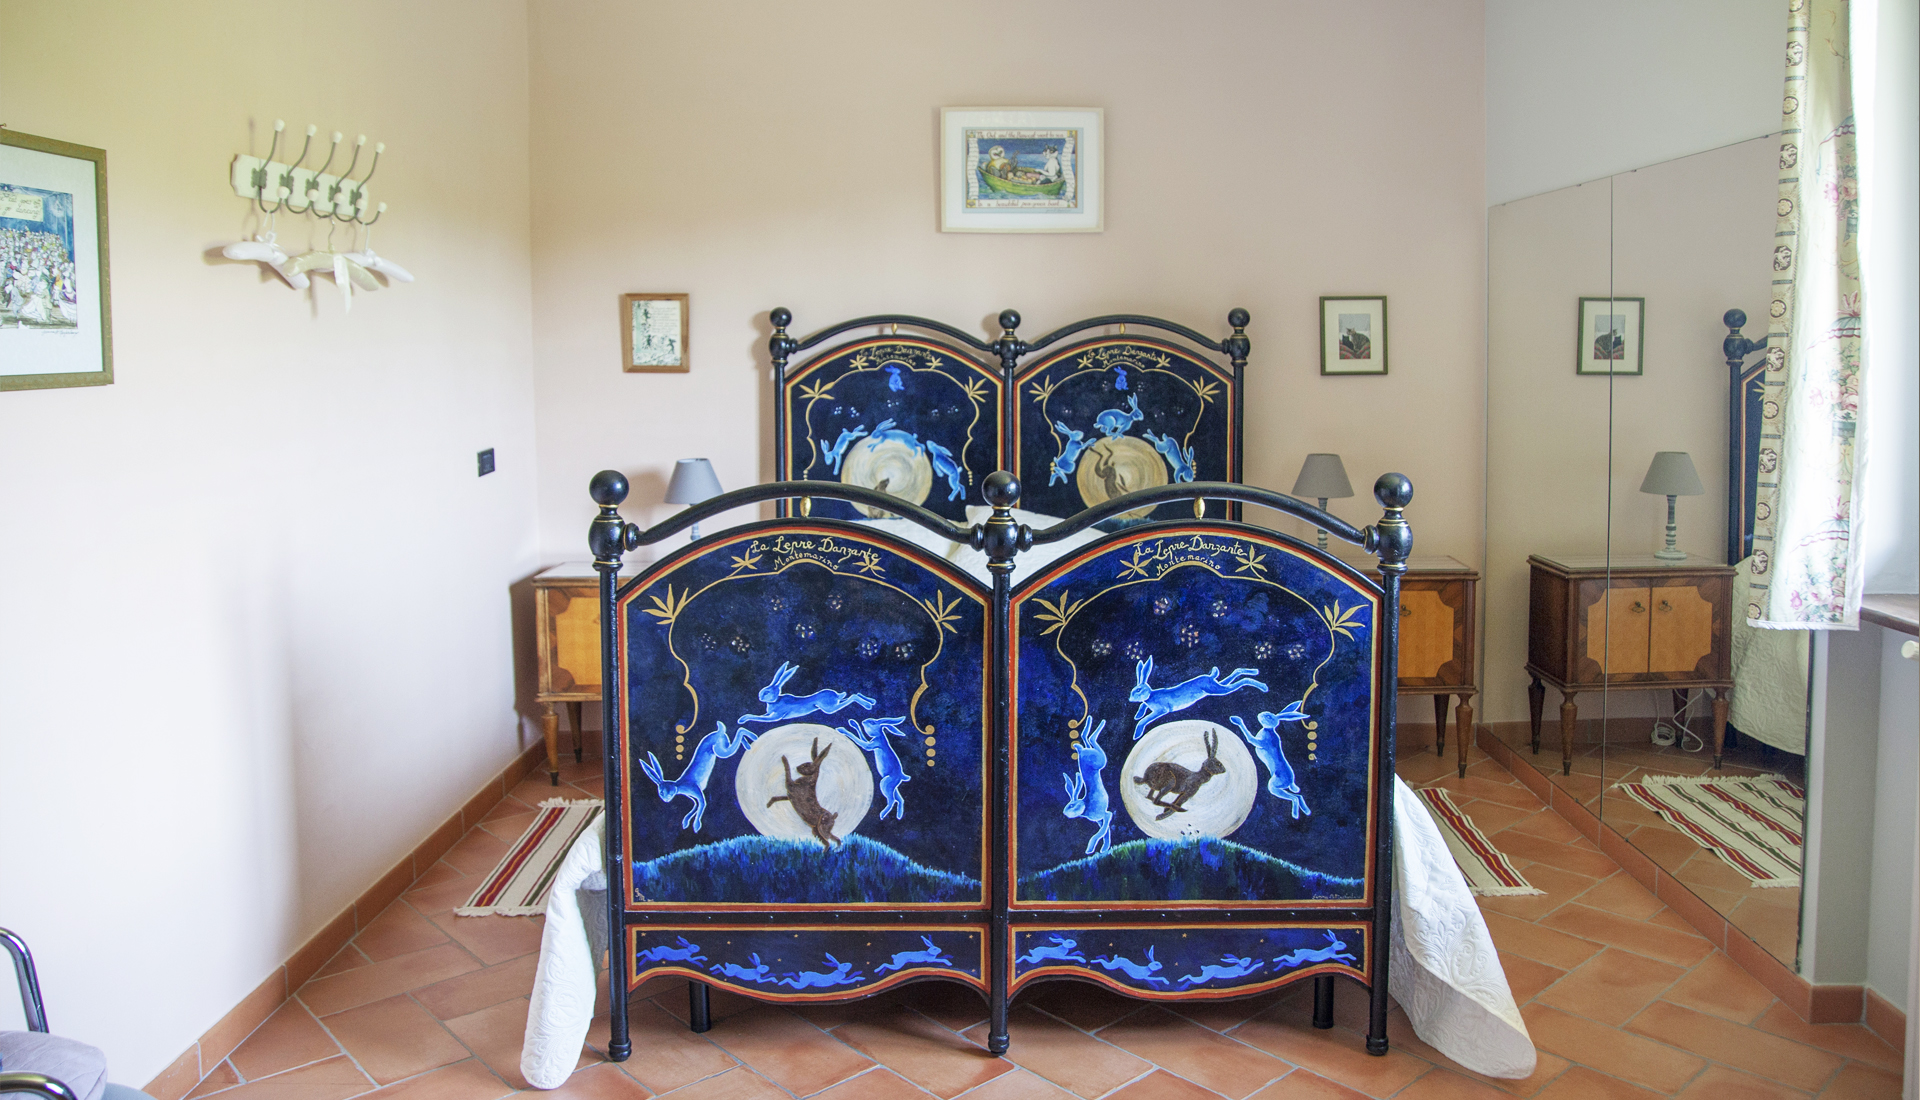 La Luna è una junior suite presso La Lepre Danzante, una guest house in stile B&B in Piemonte, Italia, vicino ad Alba: ecco una vista dell’interno.